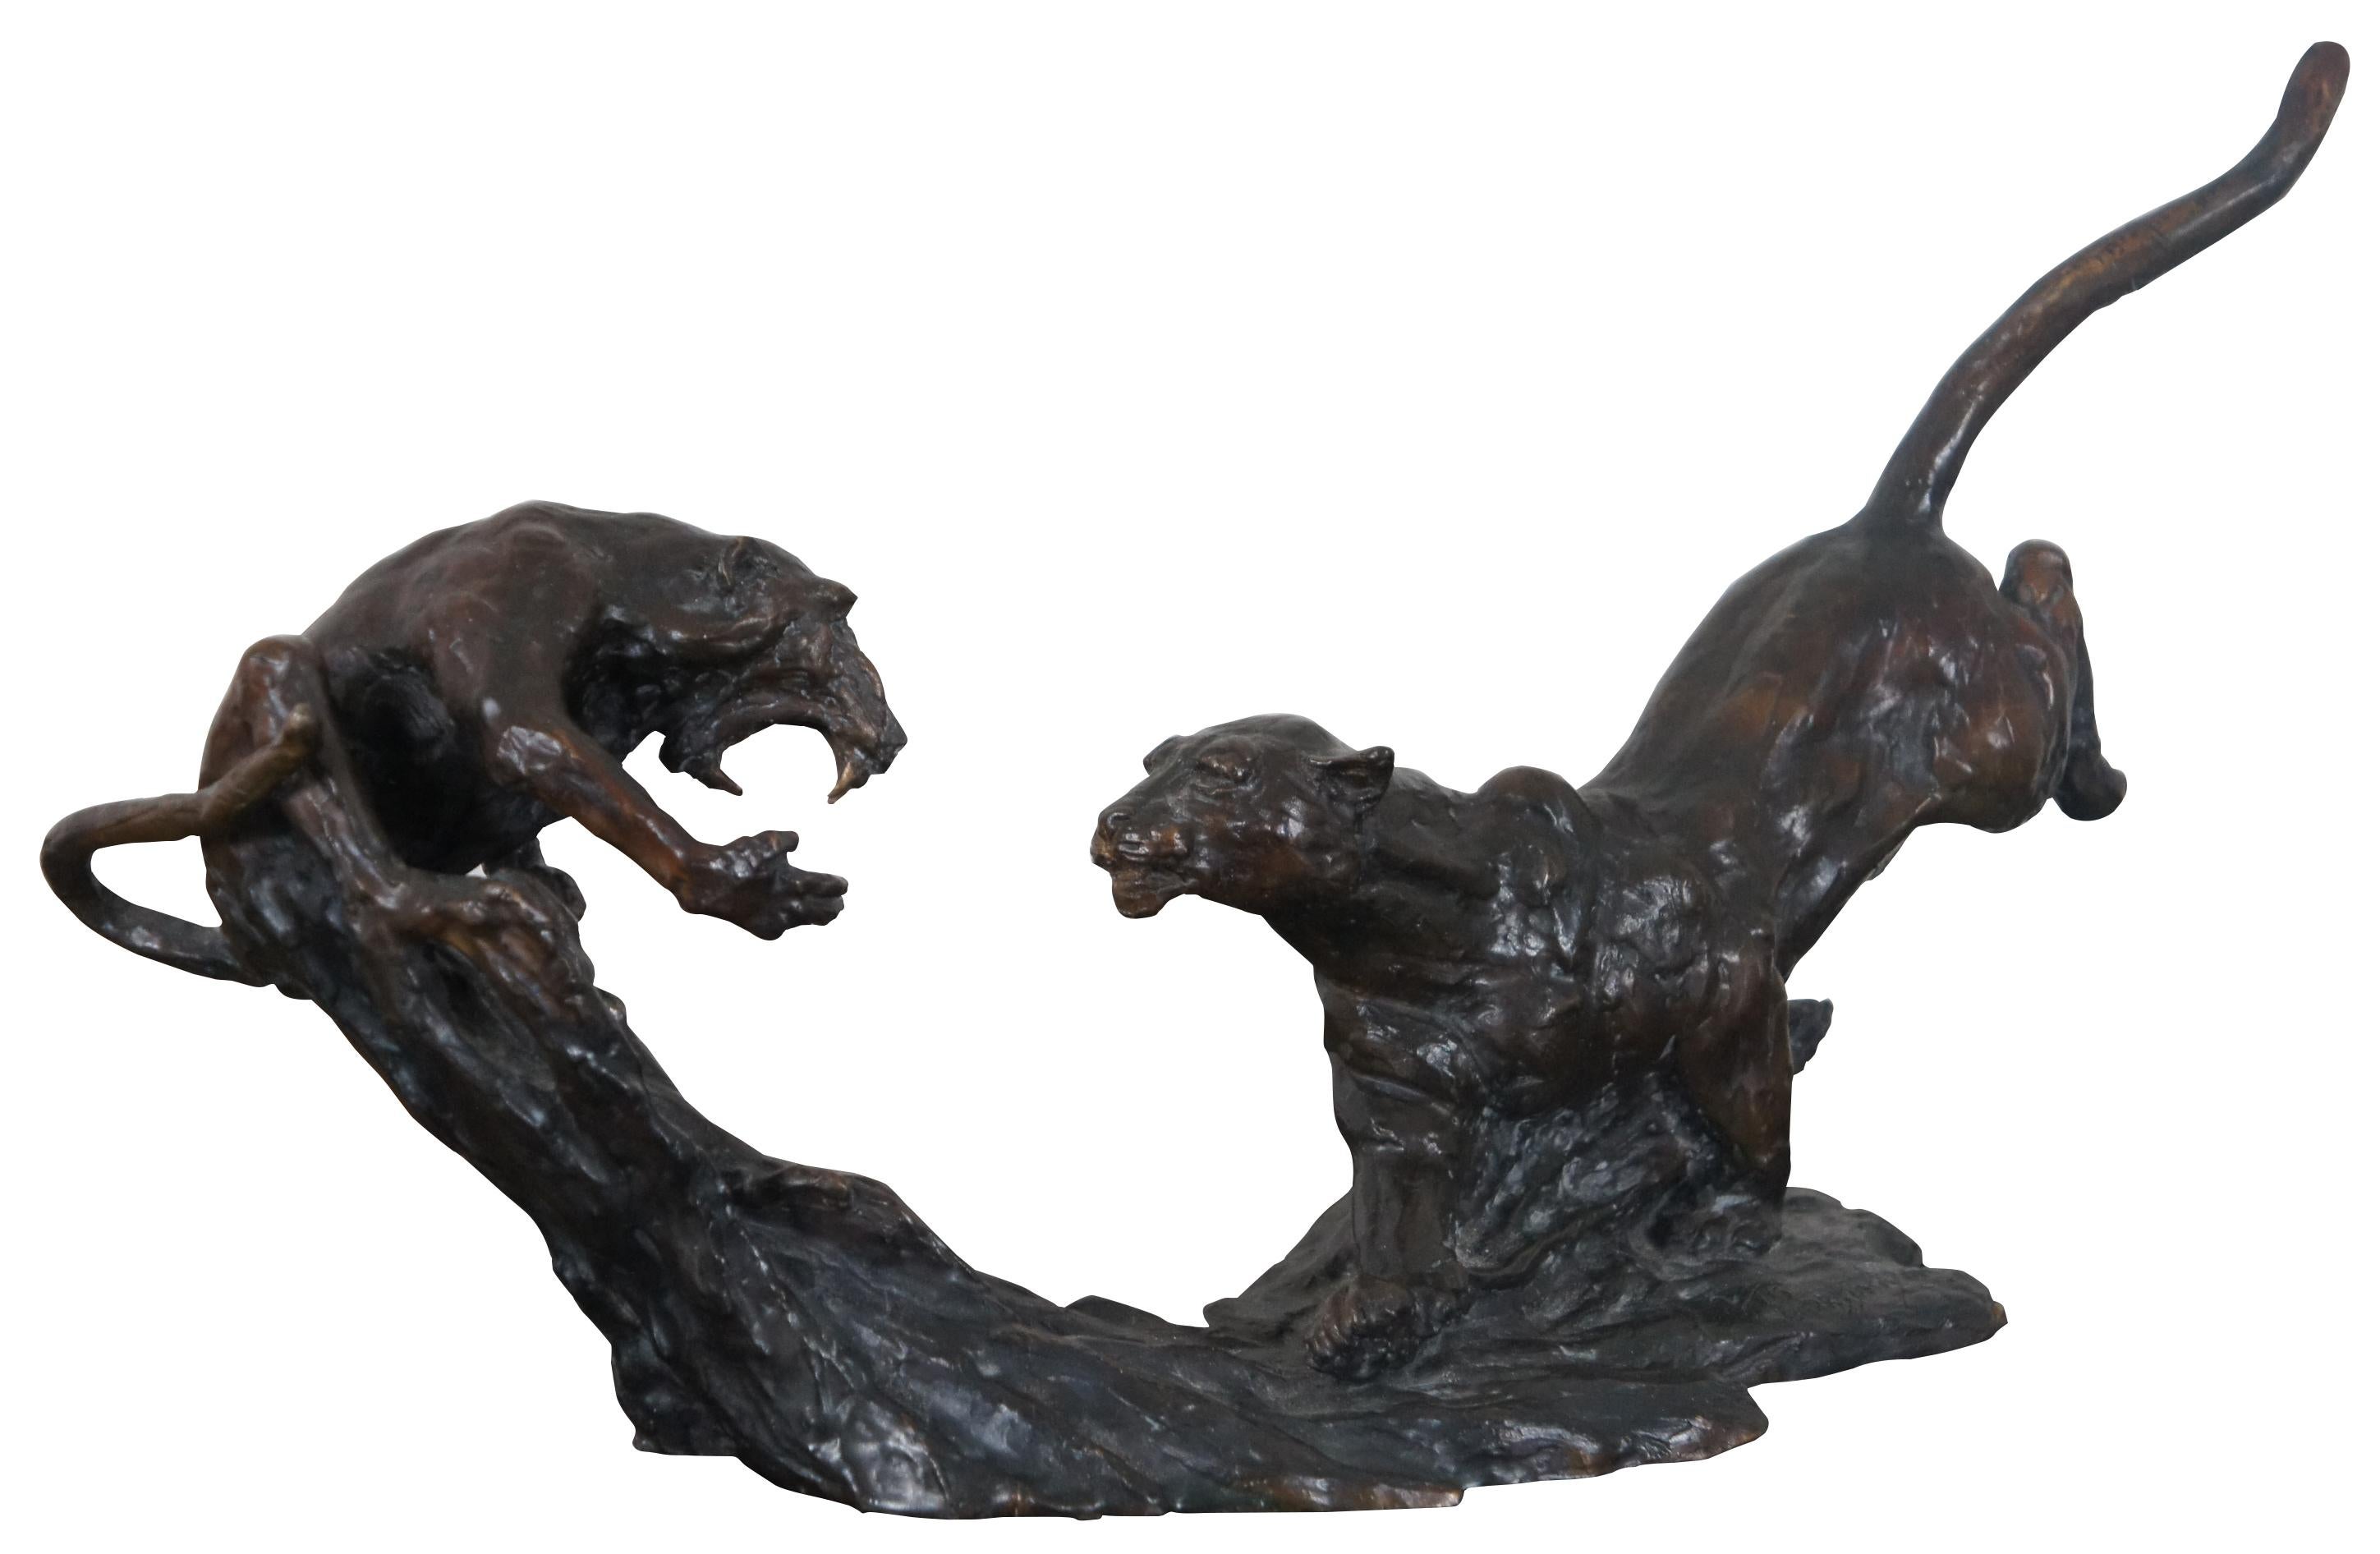 Sculpture en bronze représentant un léopard bondissant sur un babouin hurlant sur une souche d'arbre. Signé et numéroté 2/15. Barry Jackson (né en 1949) est actif/vit en Afrique du Sud. Barry Jackson est connu pour ses sculptures. Mesure : 16